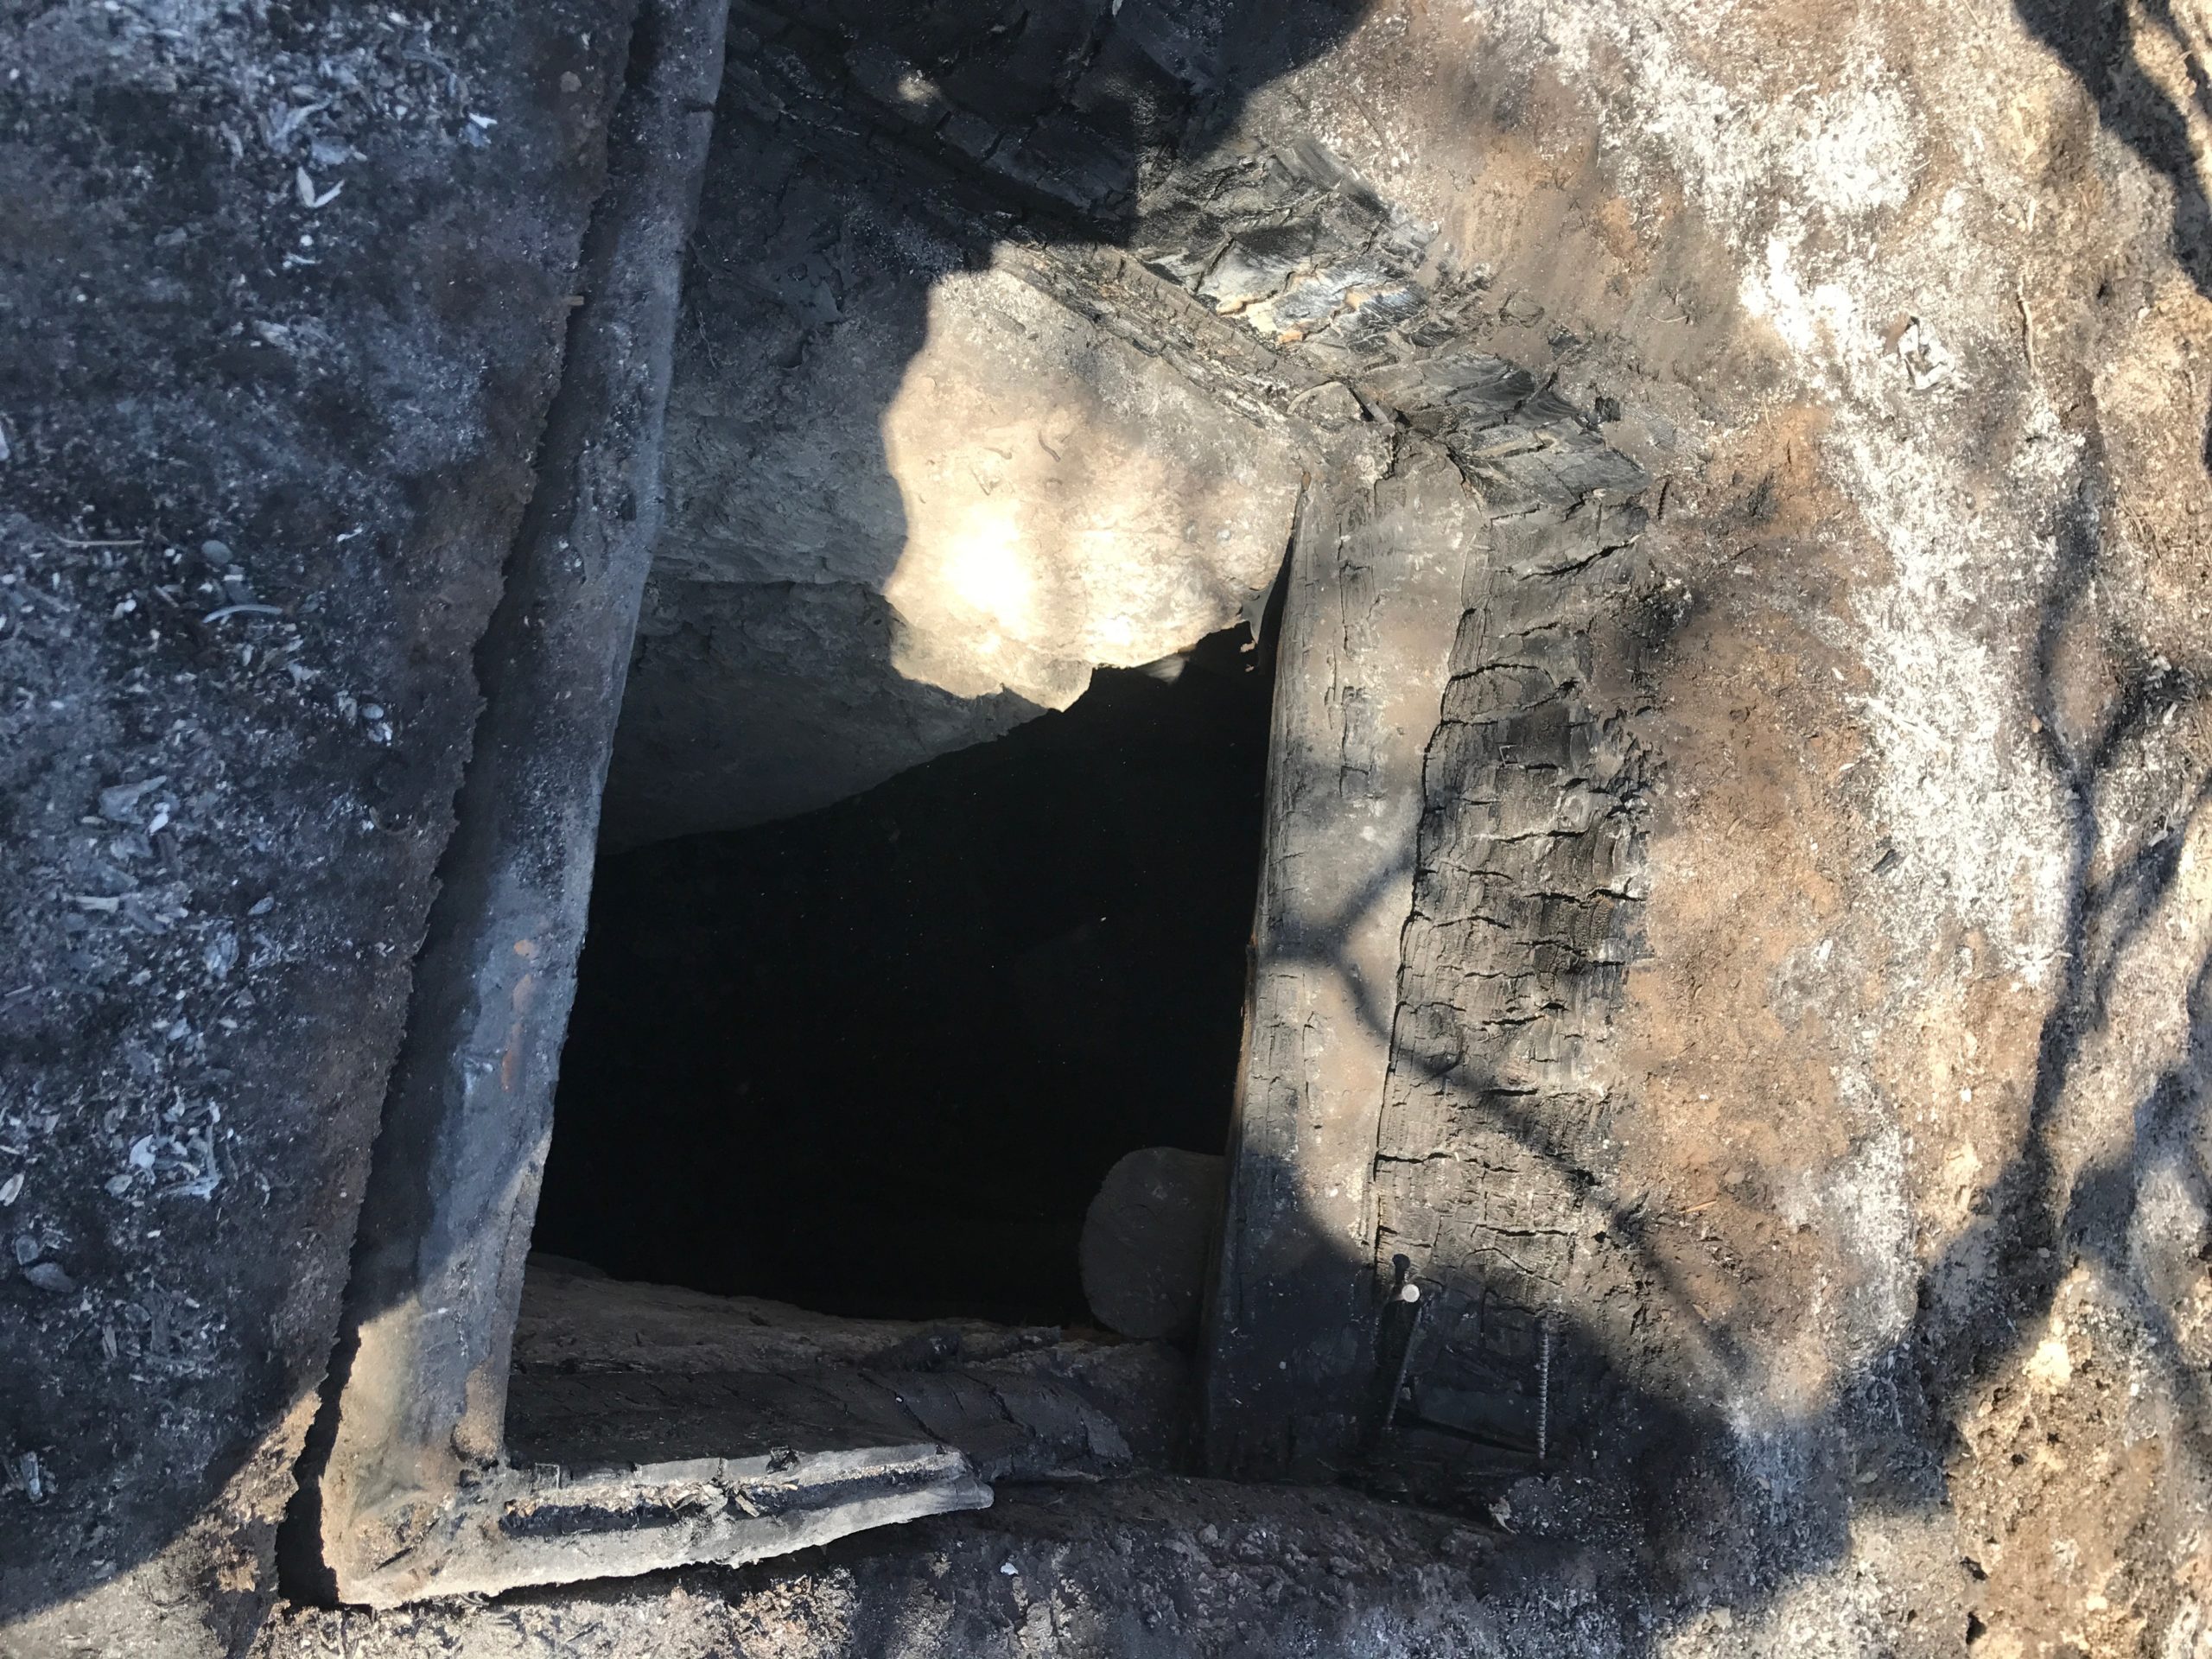 Doomsday Prepper’s Sketchy, Ammo-Filled Bunker Destroyed By Regular Old Bushfire